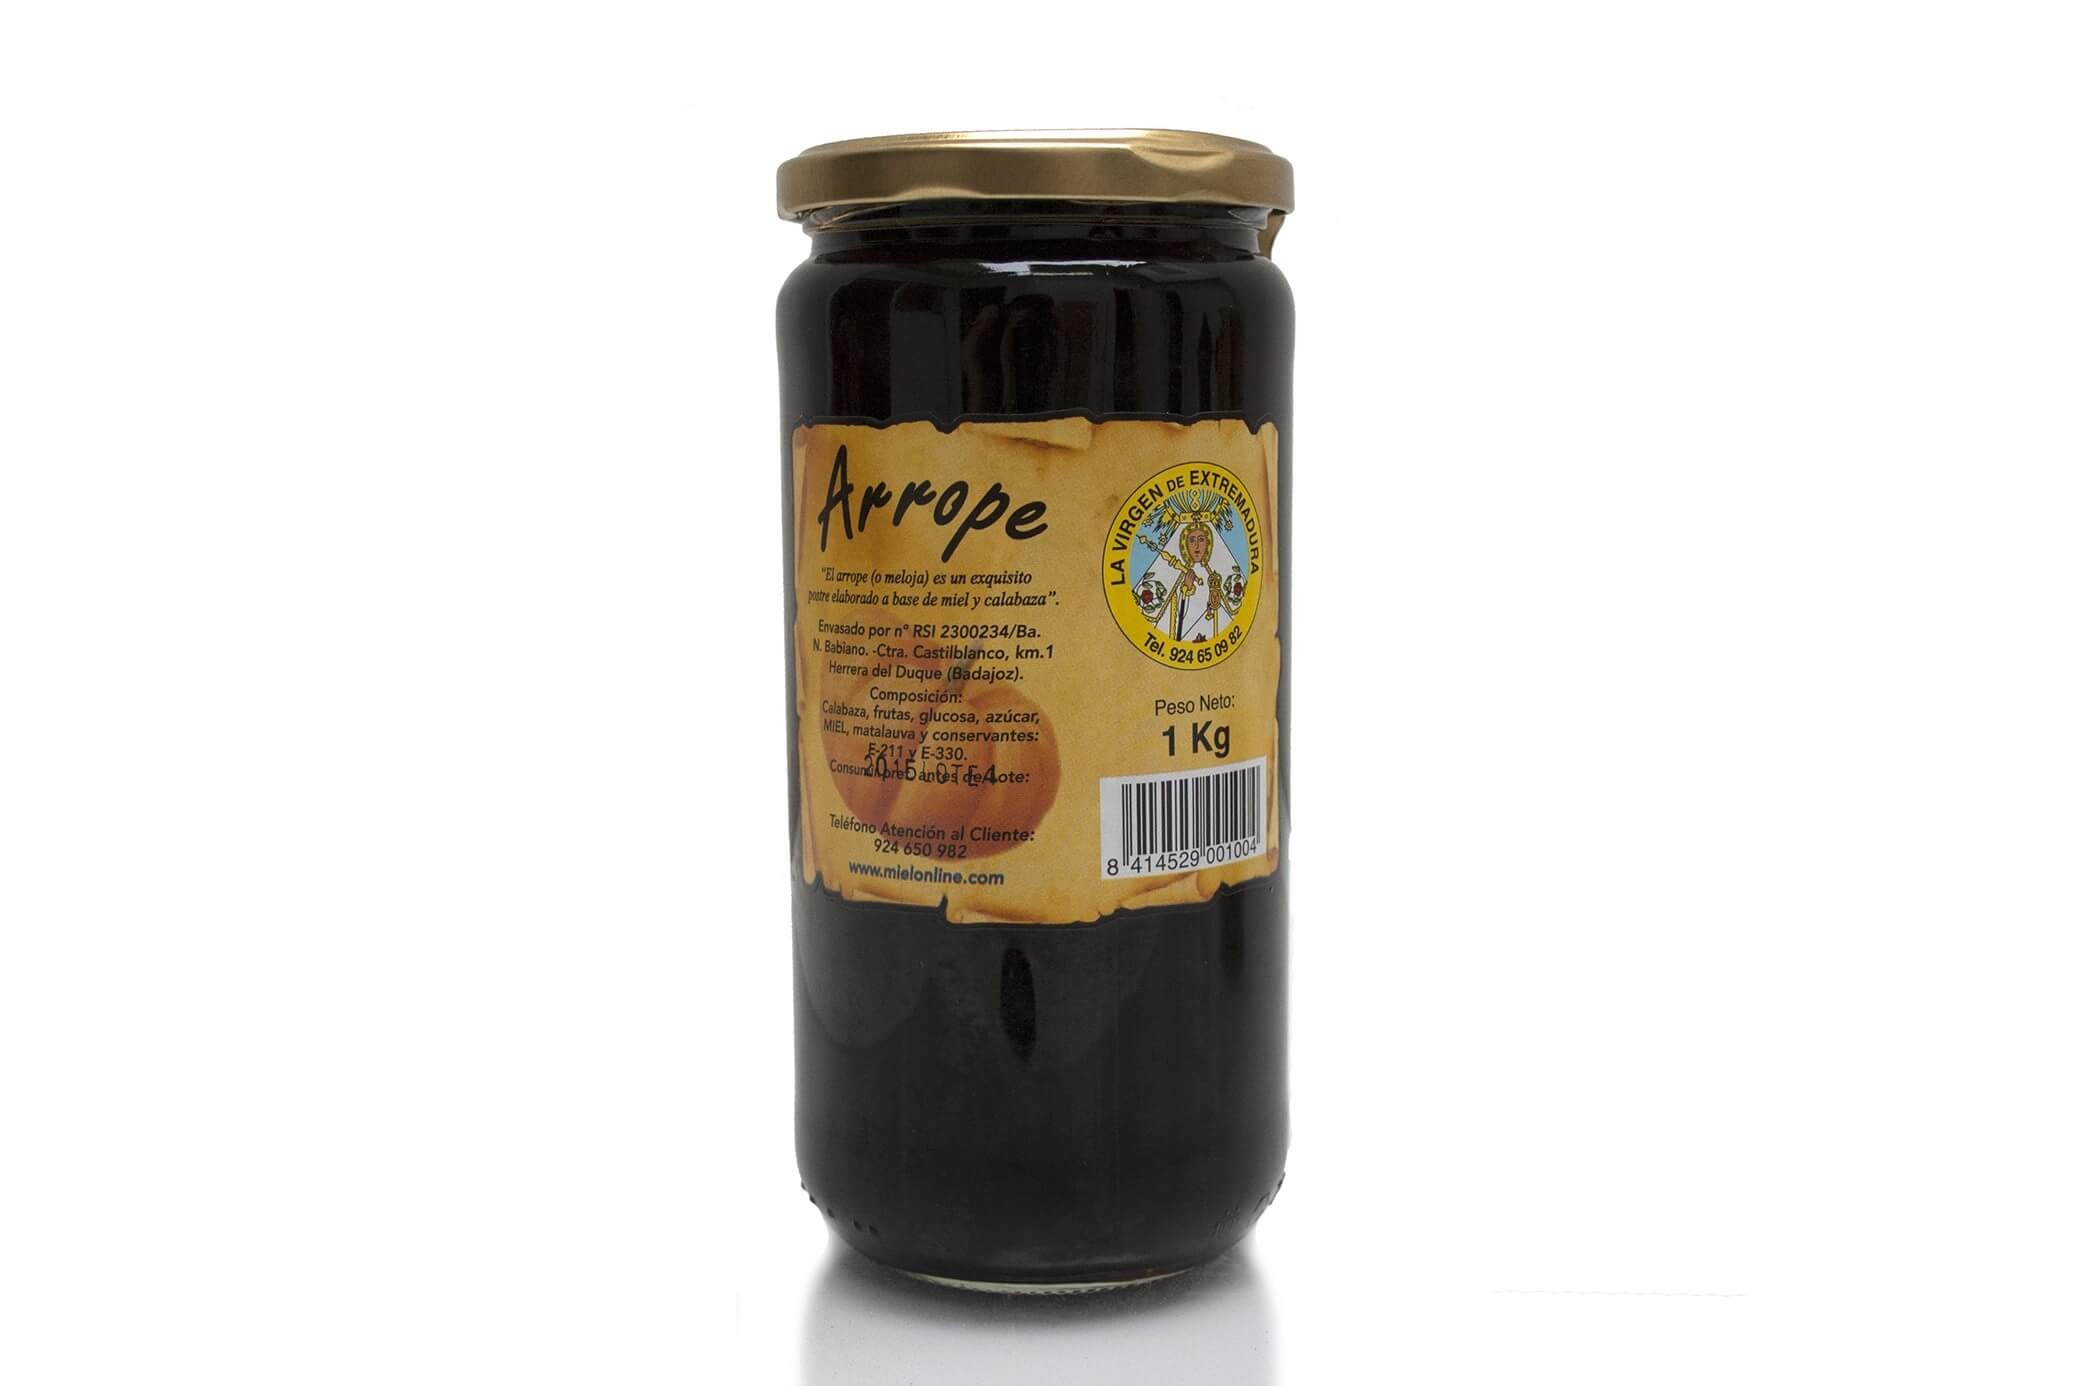 Arrope Honey of Spain